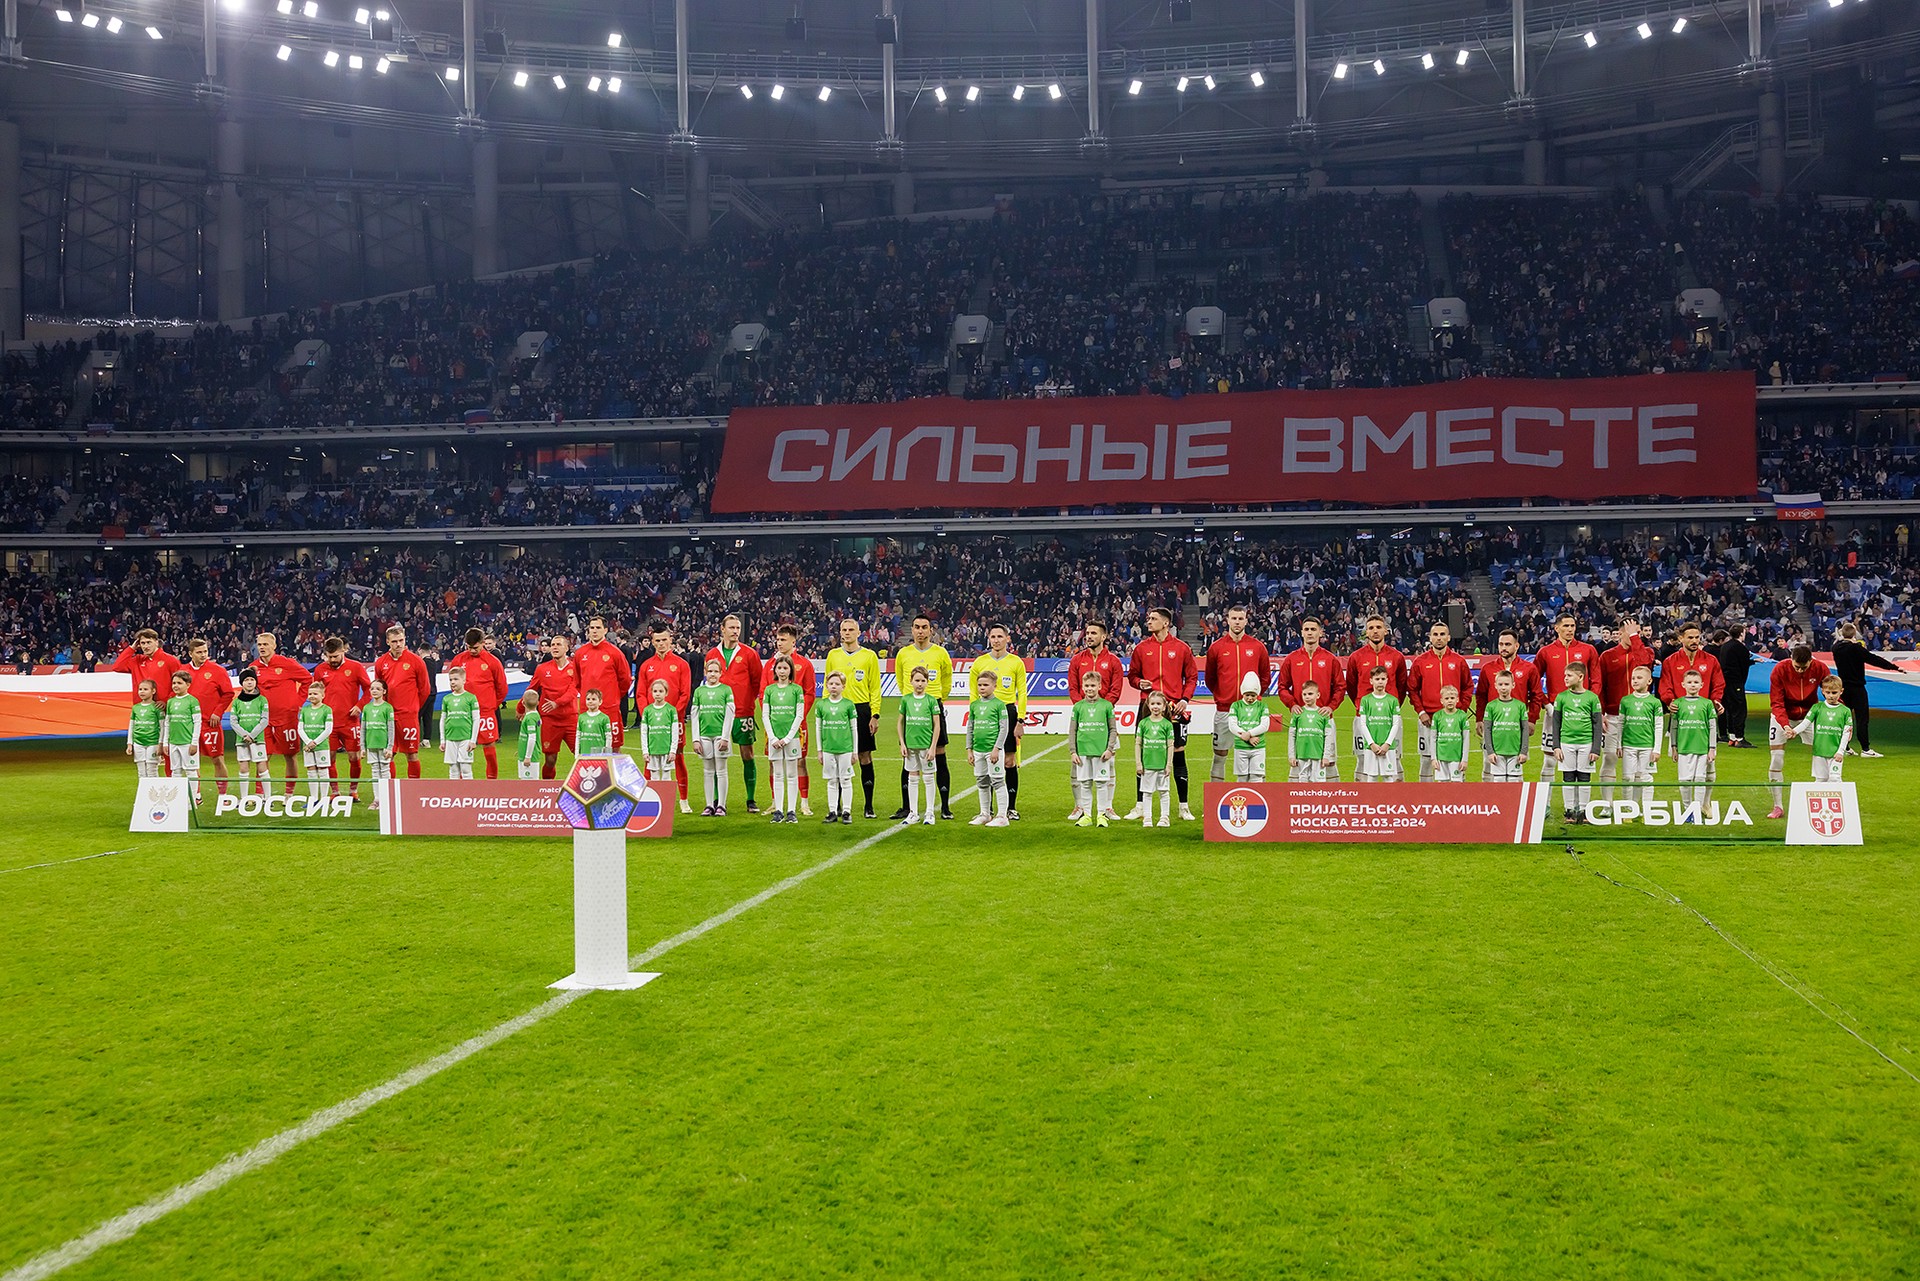 Режиссёр Кустурица рассказал, почему матч России и Сербии стал историческим событием